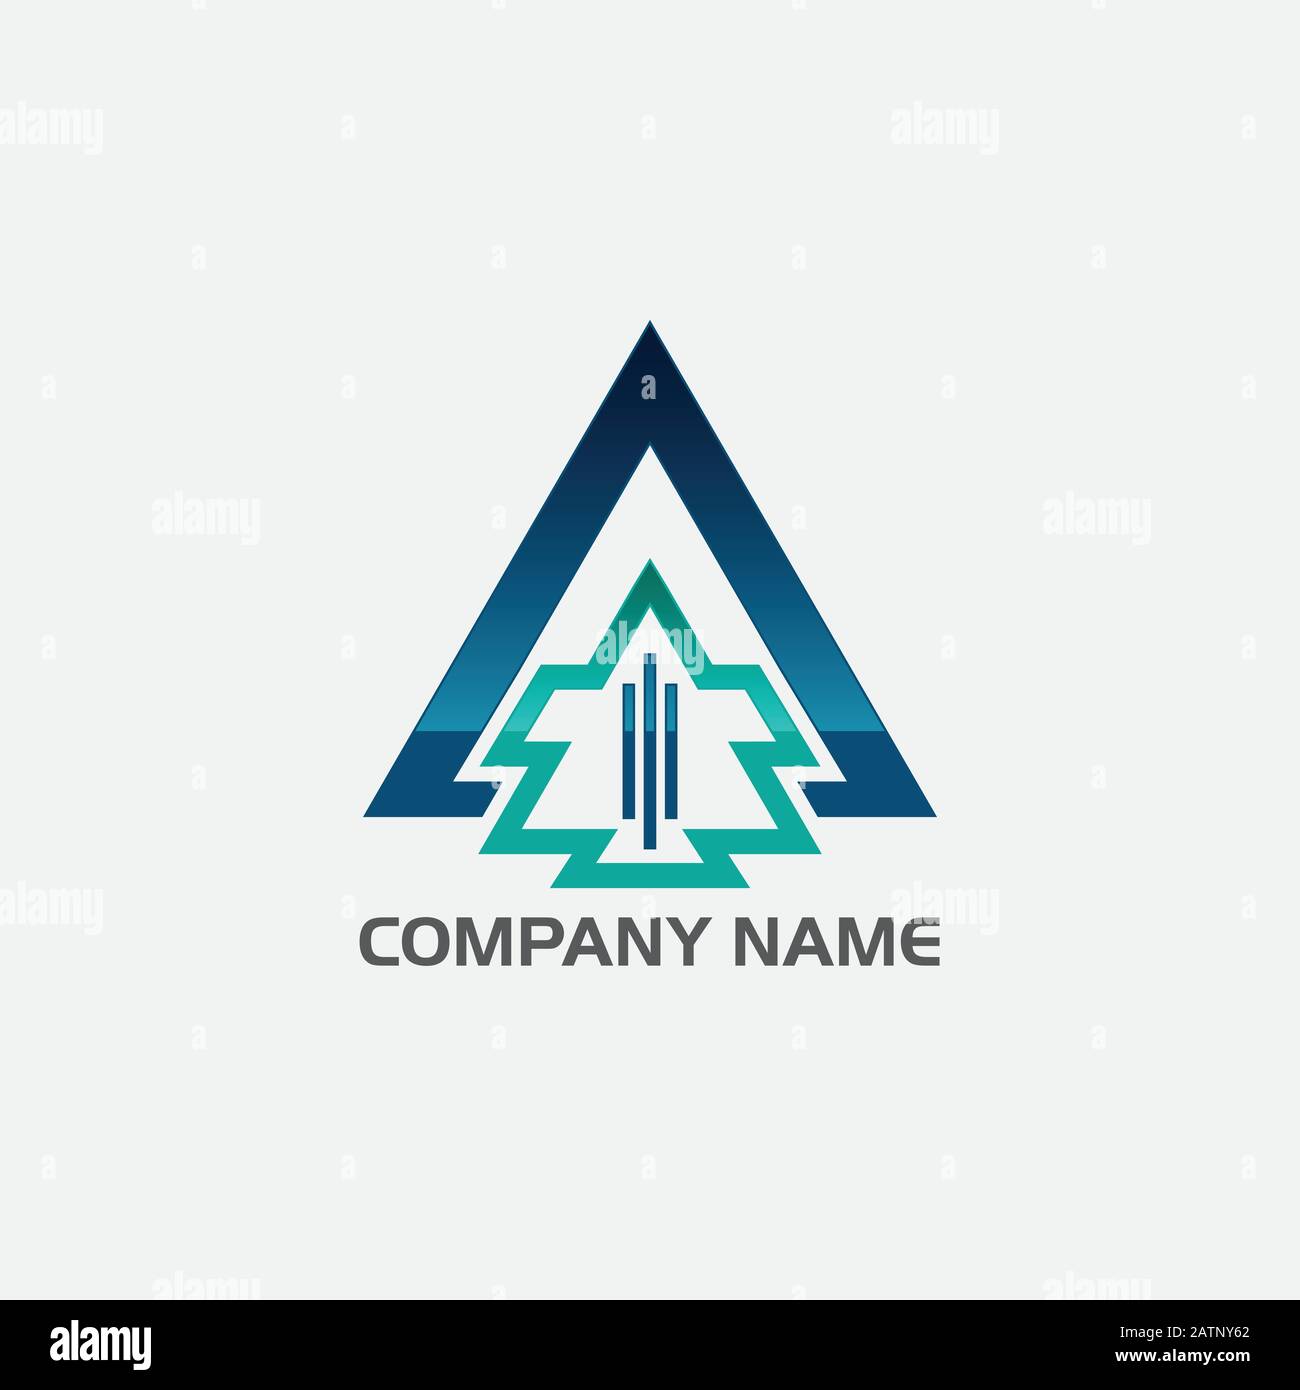 vector logo concept illustration,Media logo sign, Play logo , Player logo, Movie player logo, Multimedia logo icon, Audio music logo Stock Vector